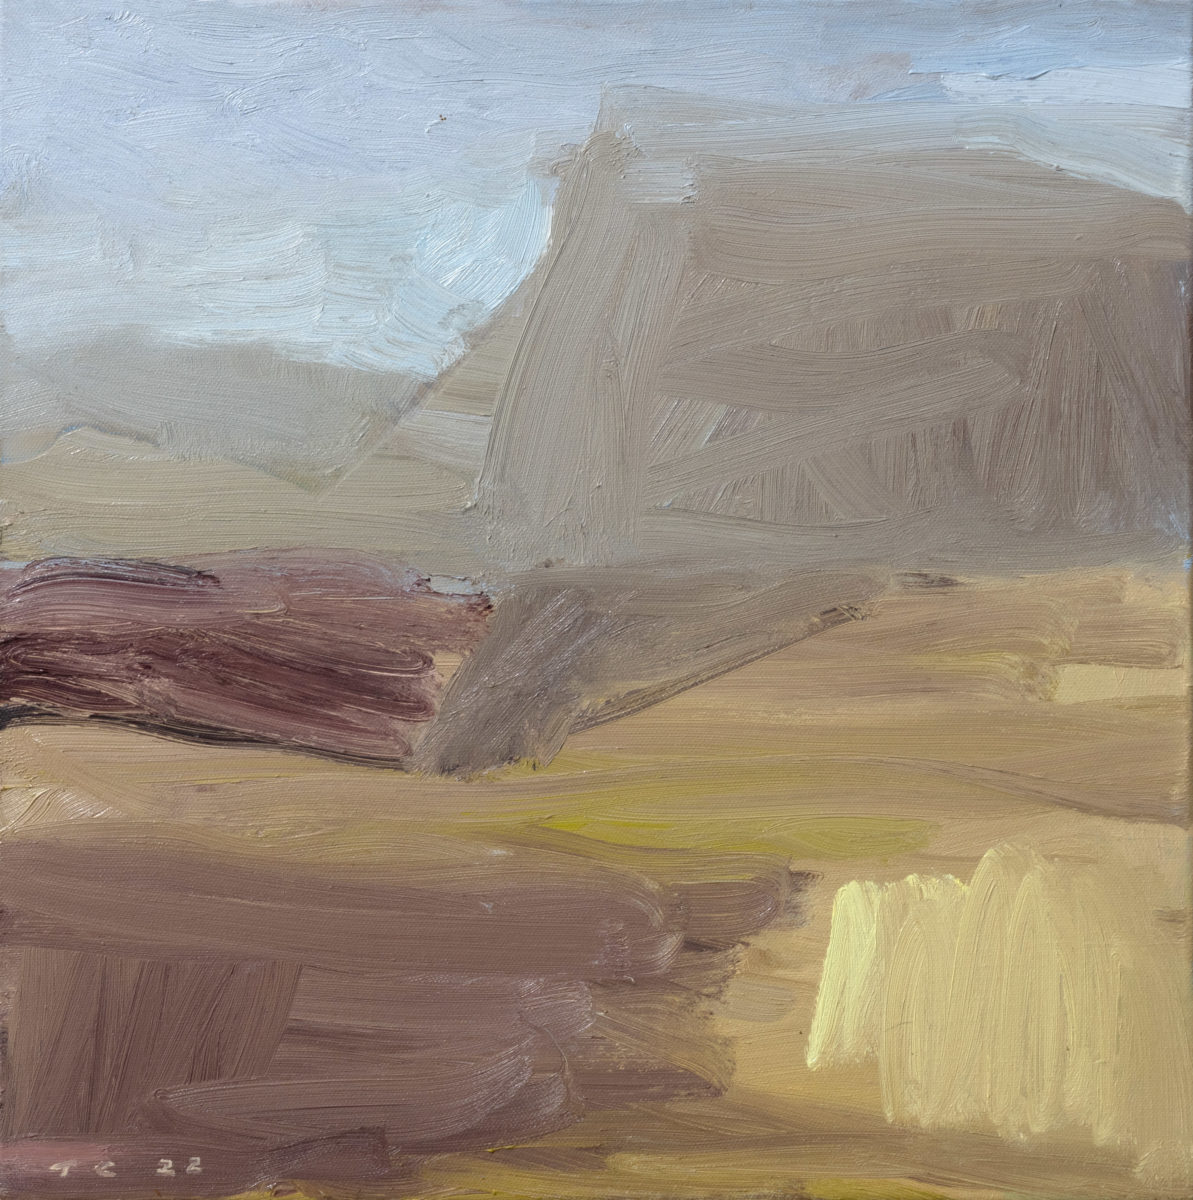 Kilkivan Landscape 2022 | Tony Coles | oil on canvas | 46 x 46 cm | $1500